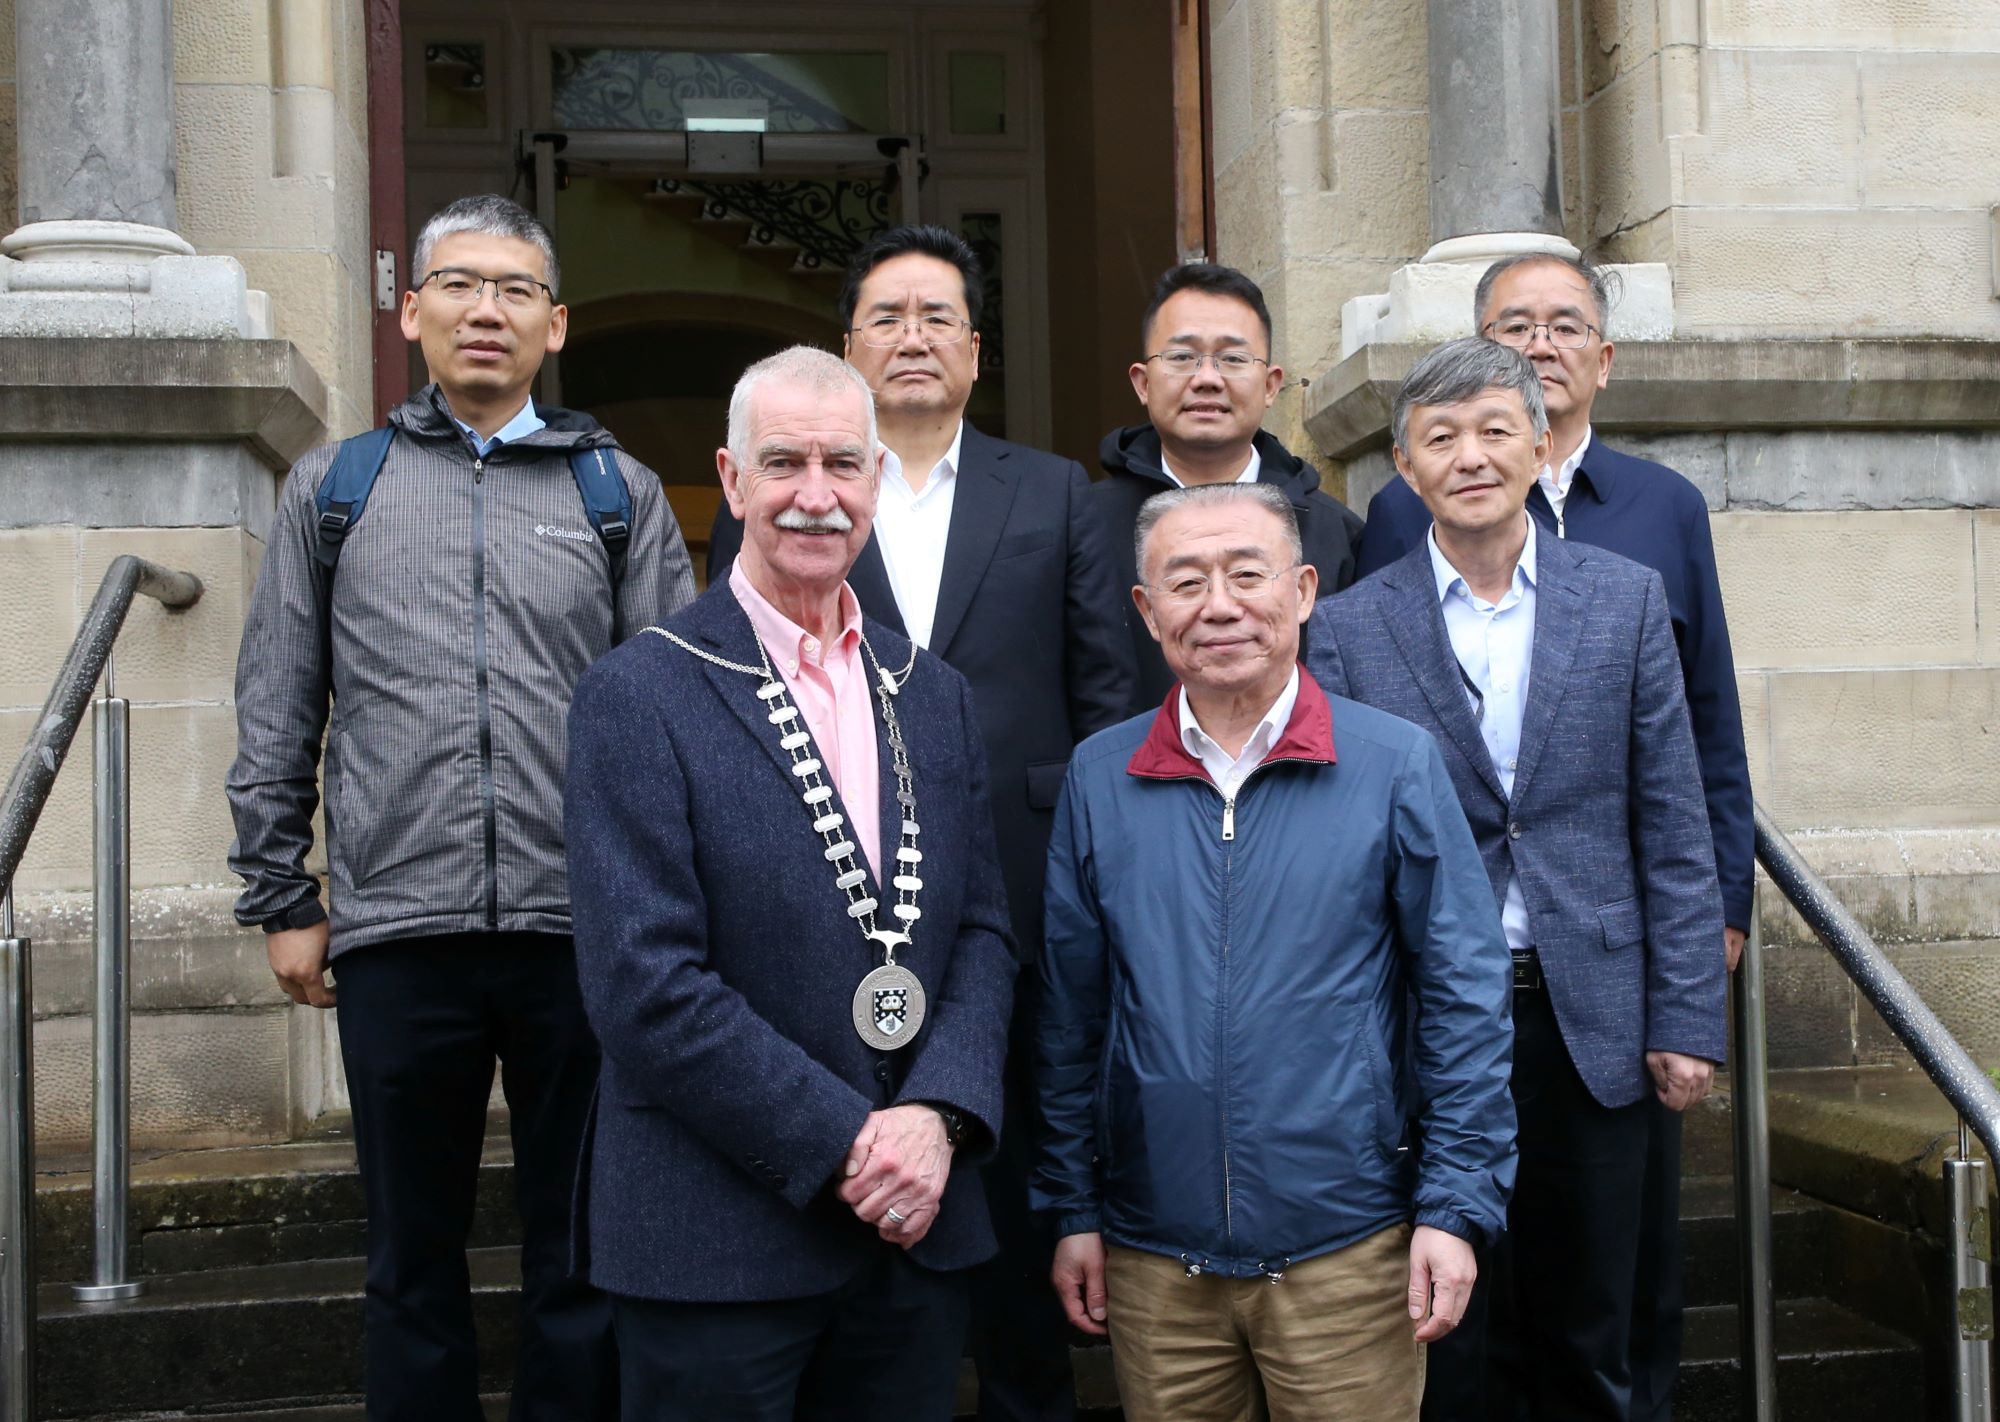 Delegation from Gansu, China Visits Sligo